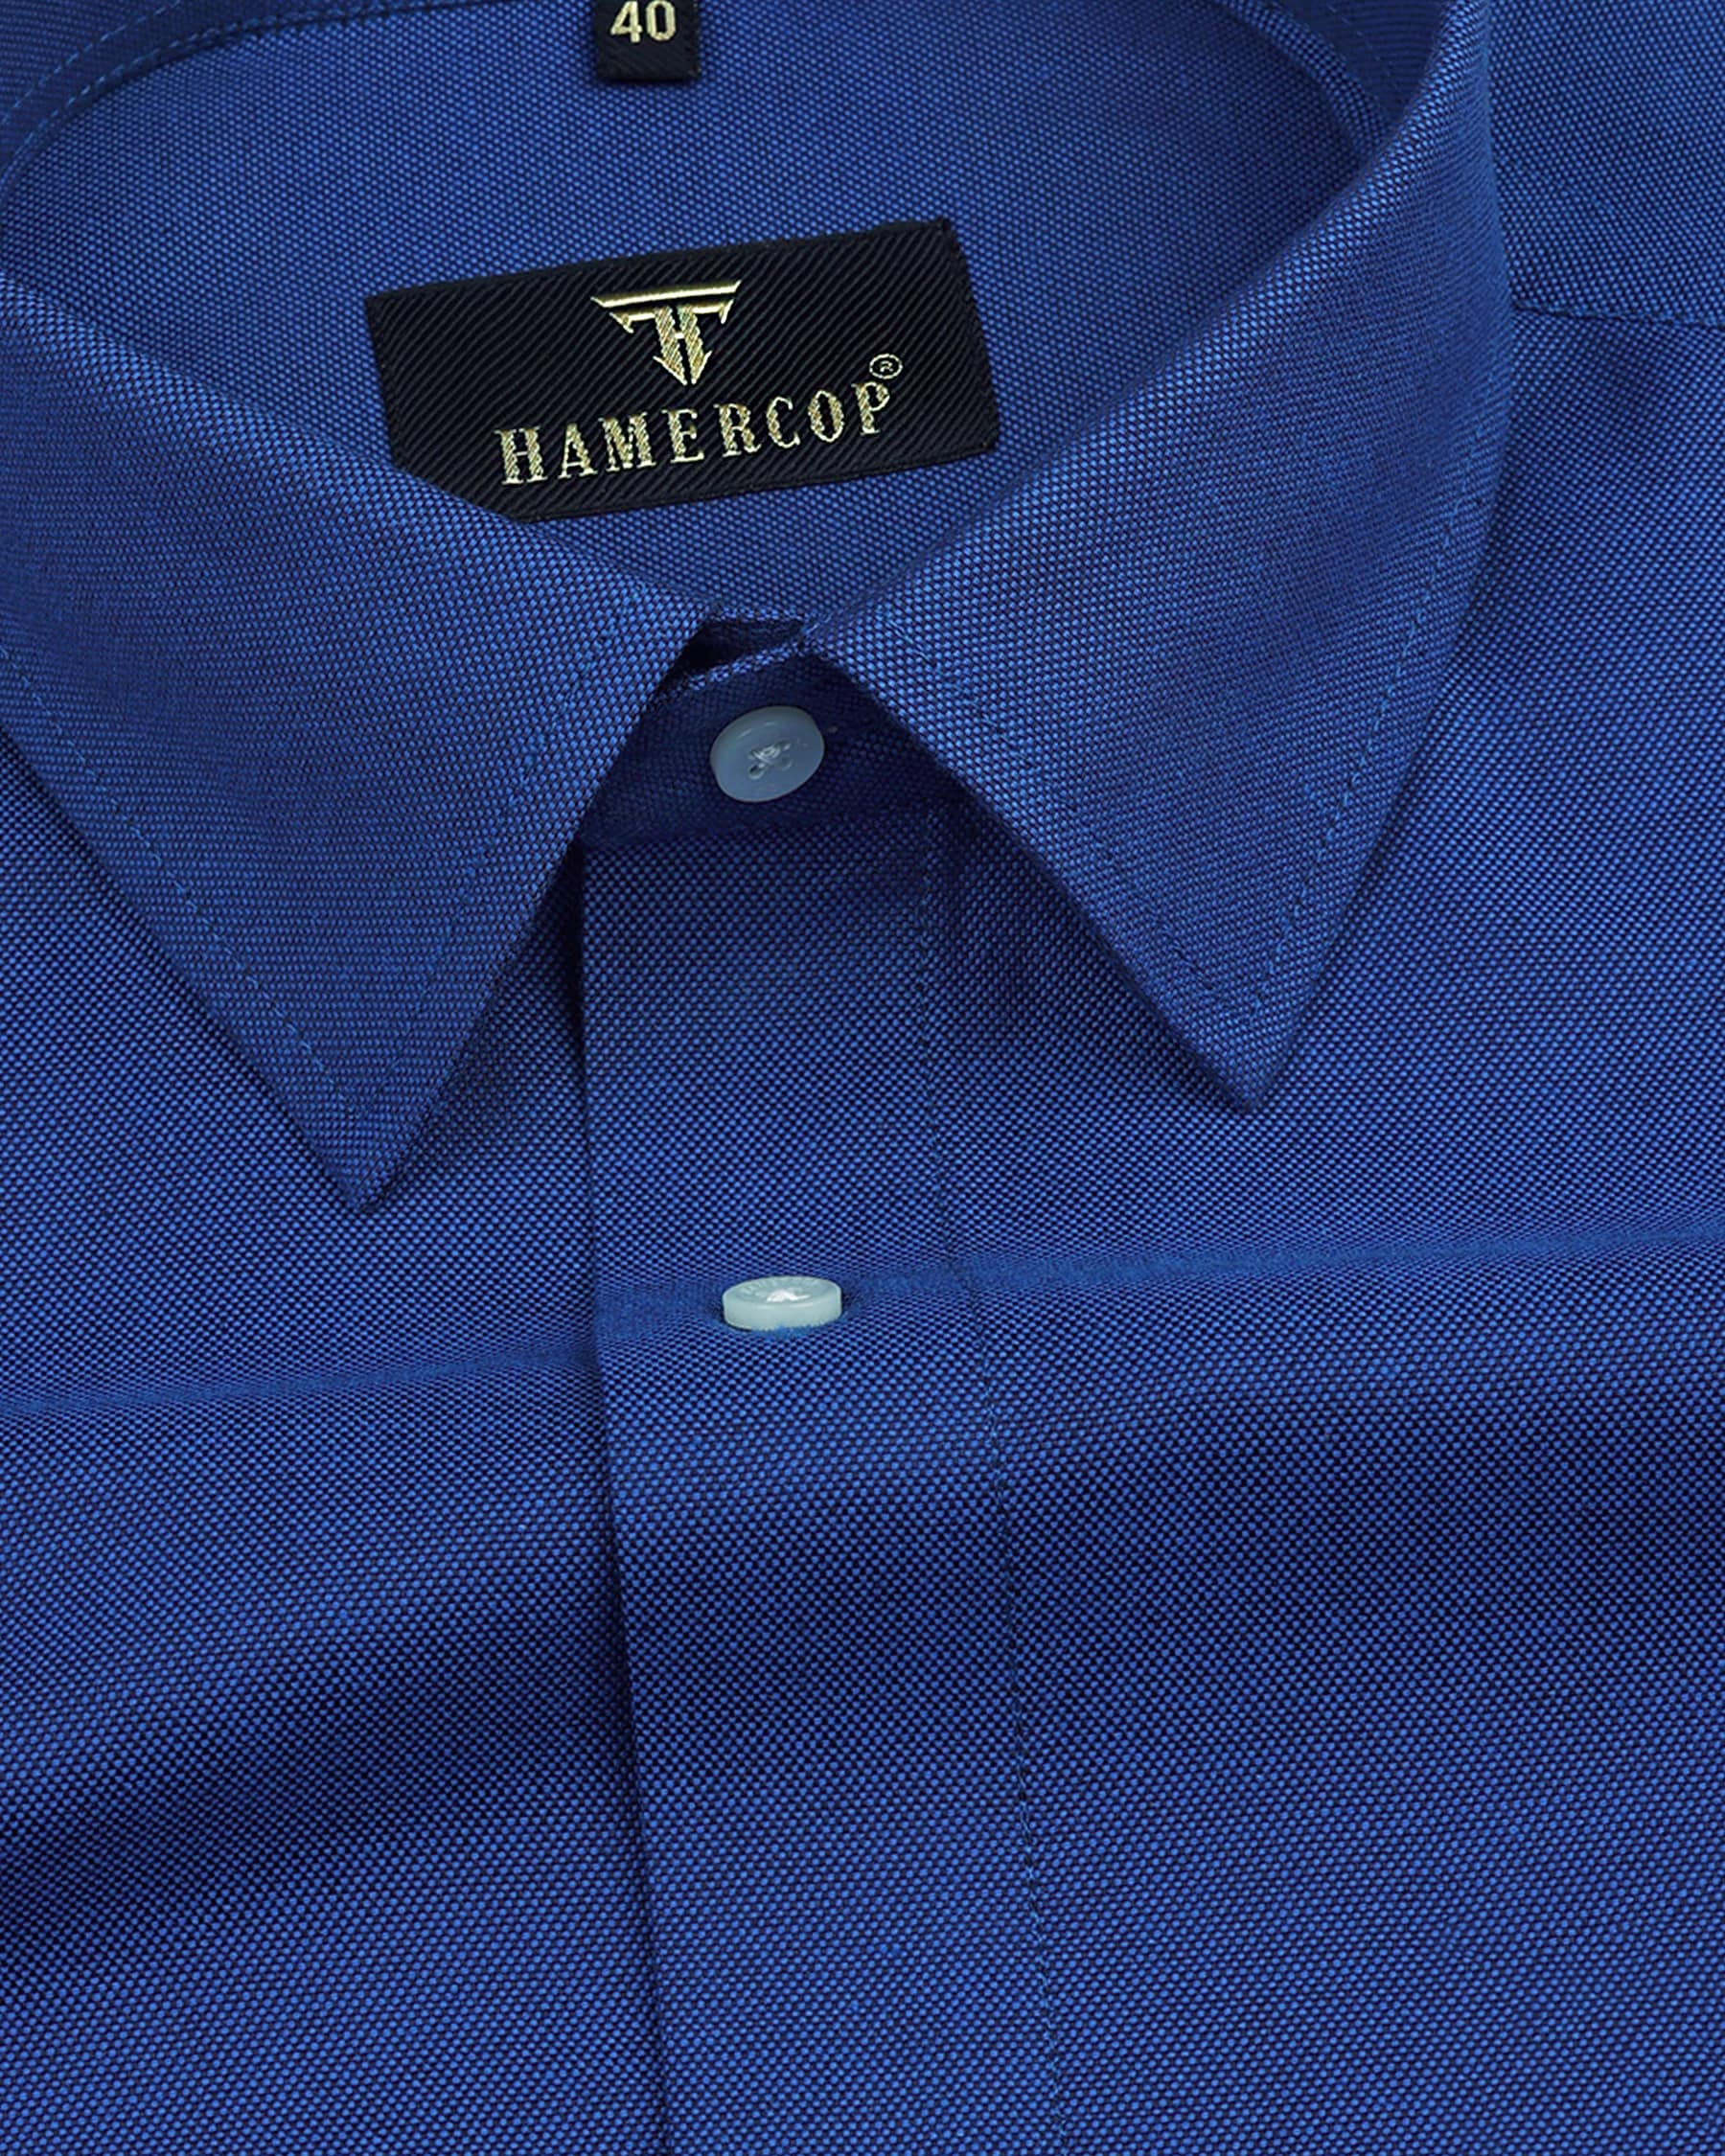 Apparel :: Men's Clothing :: T-shirt, Color: Blue